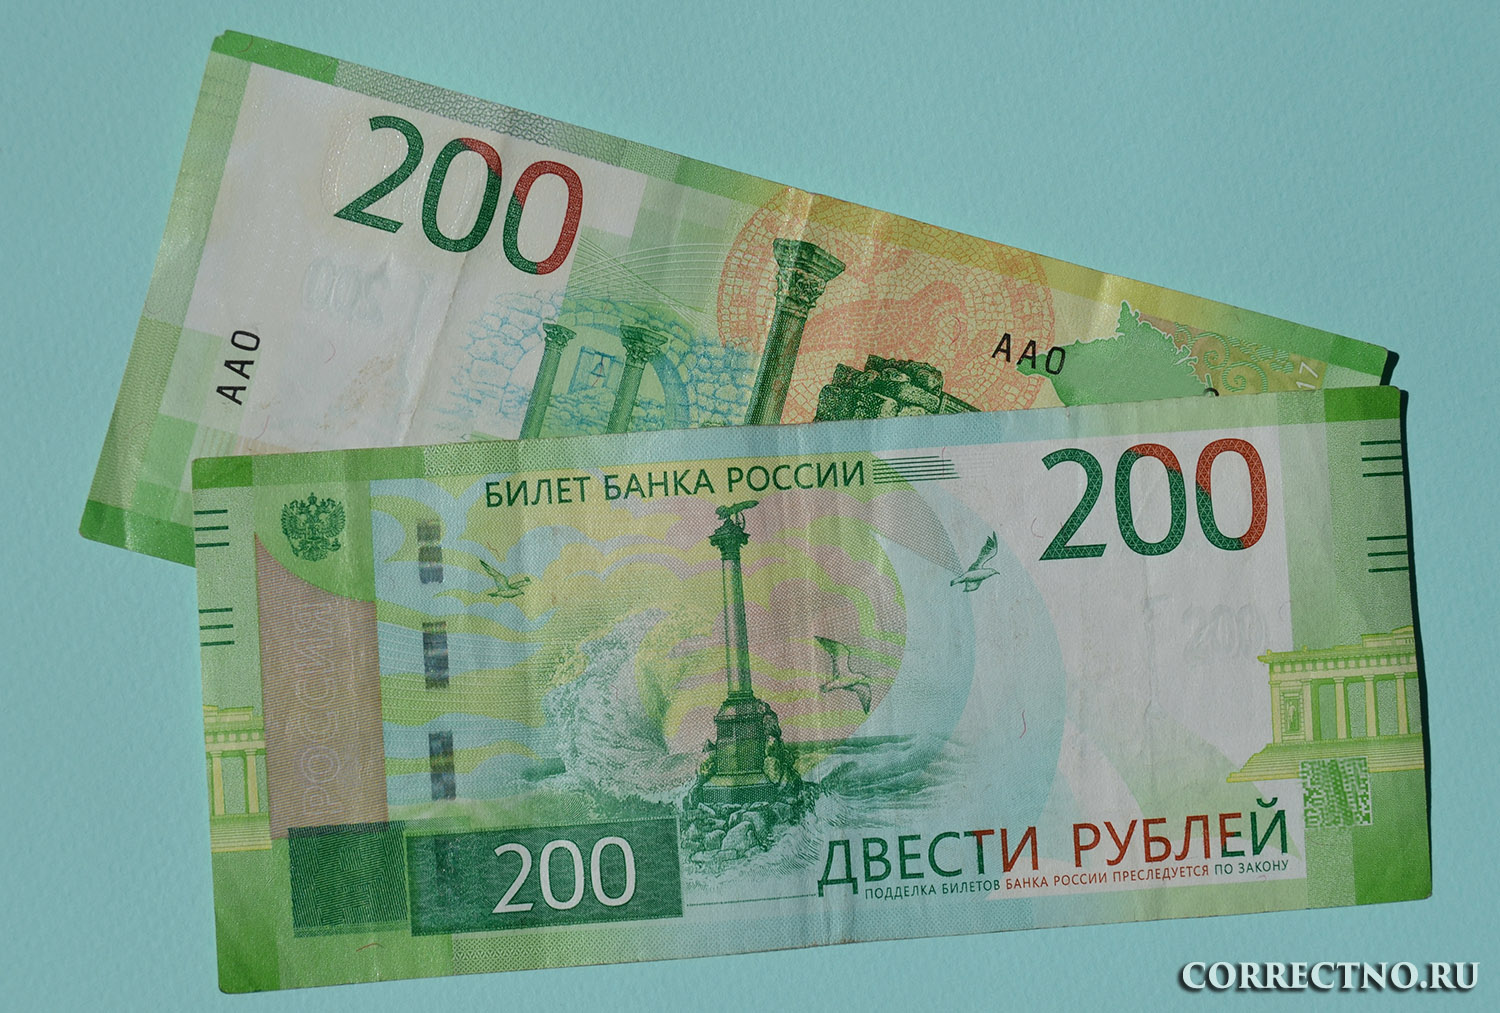 200 рублей словами